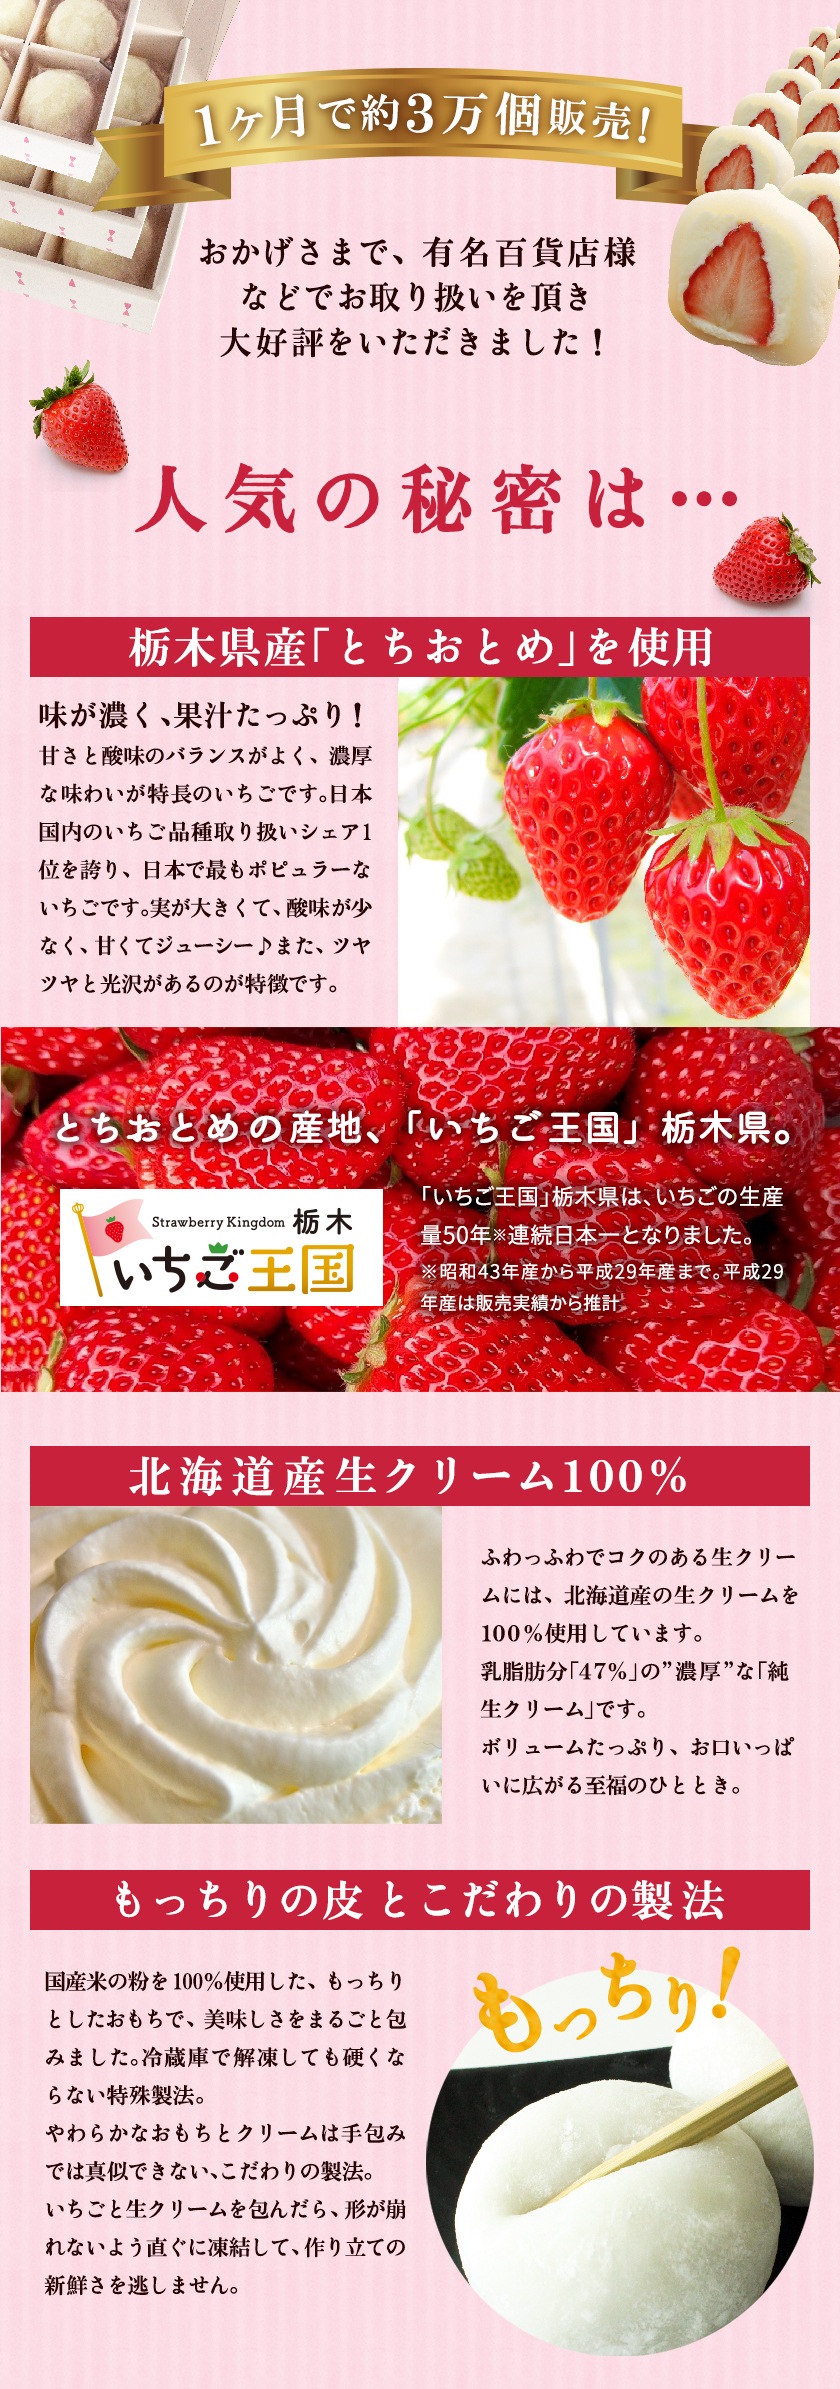 栃木県産とちおとめ、北海道産生クリームを使用